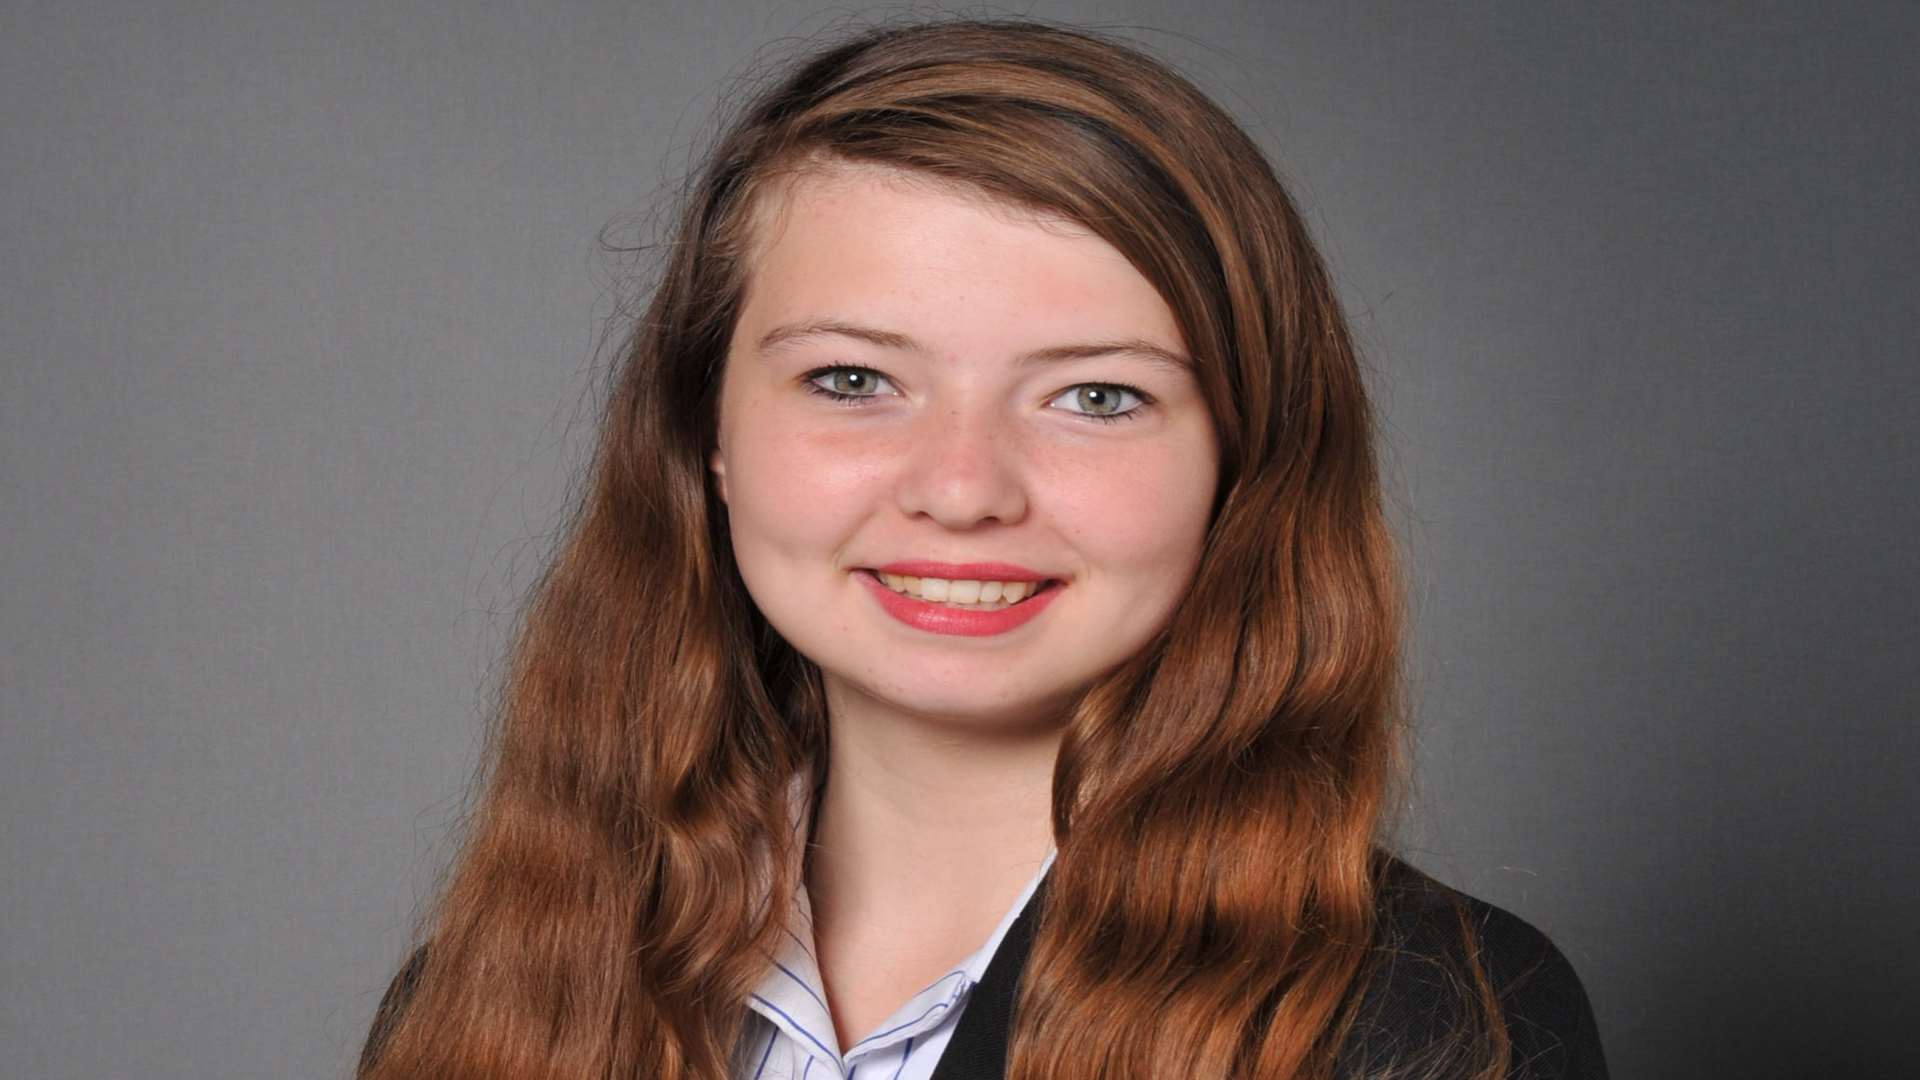 Hannah Evans, 16, died of meningitis